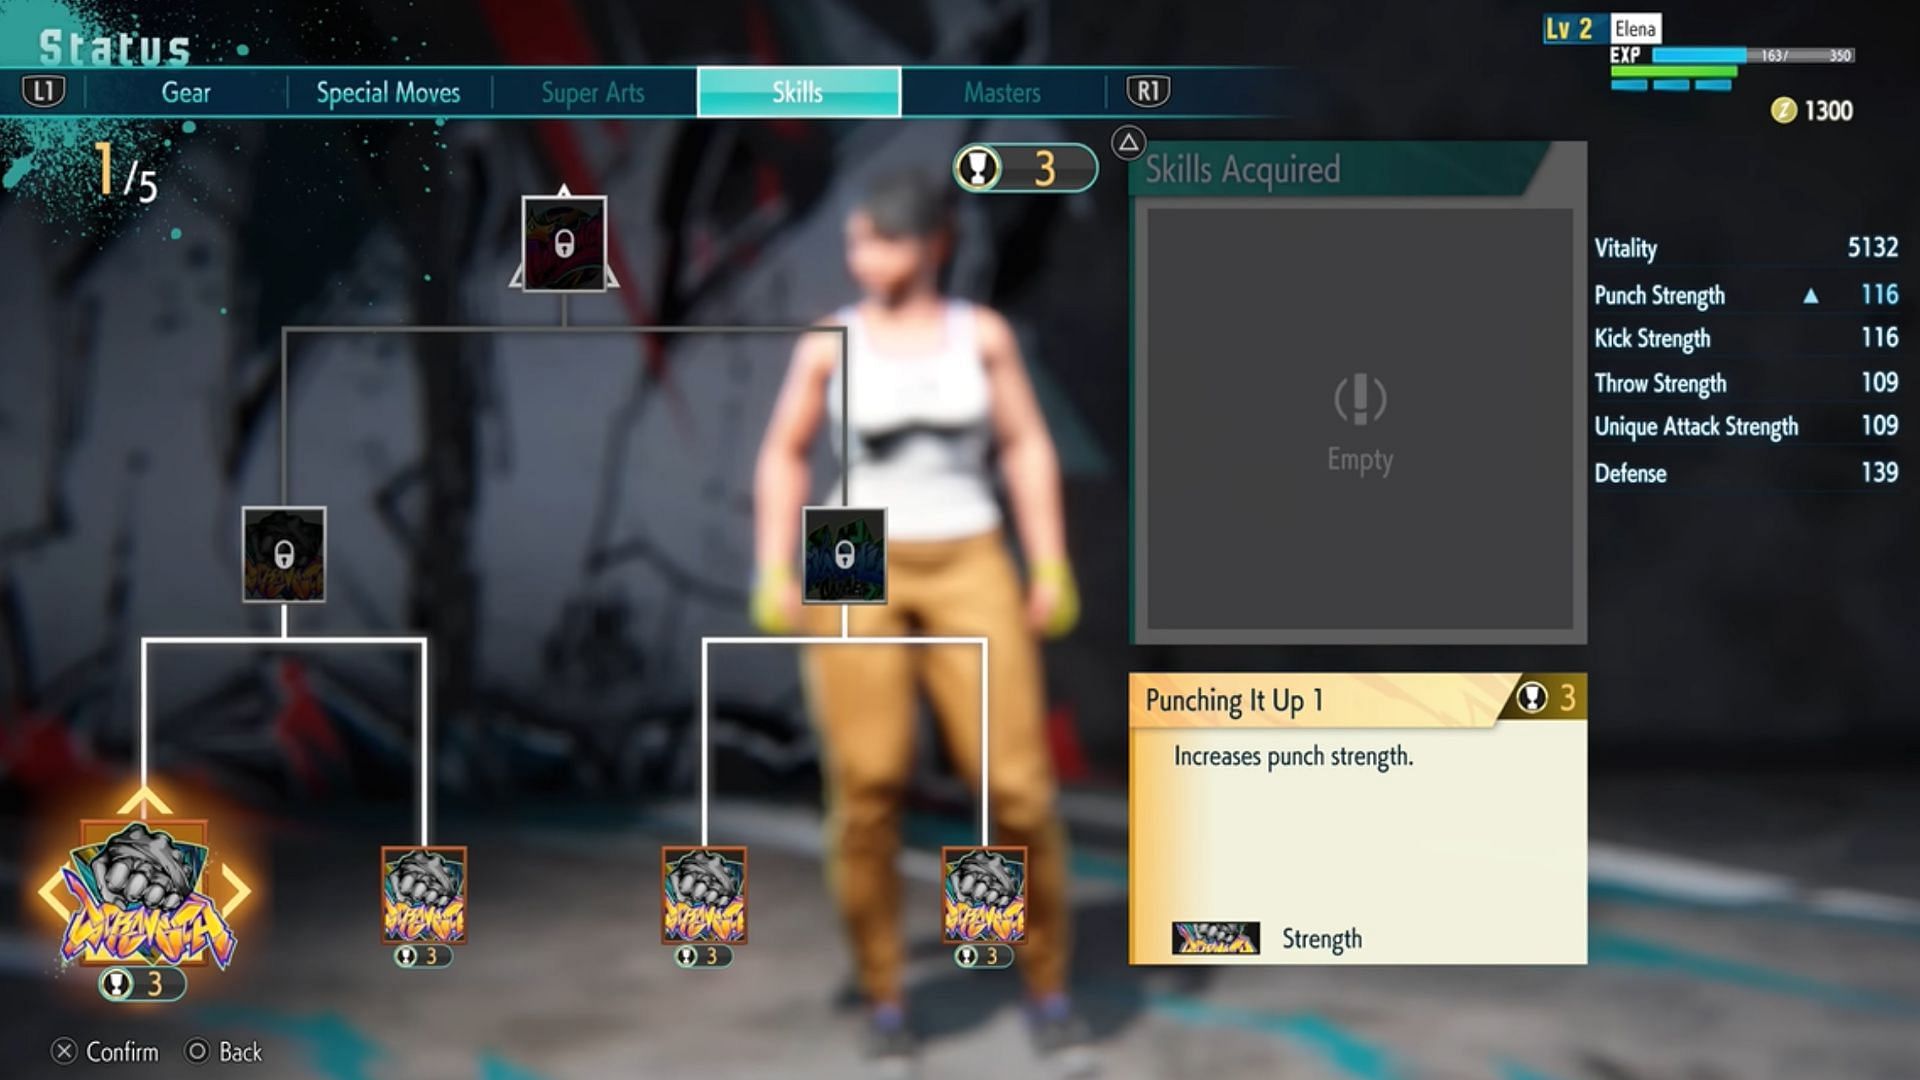 The Status menu also allows you to enhance your skills (Image via Capcom)